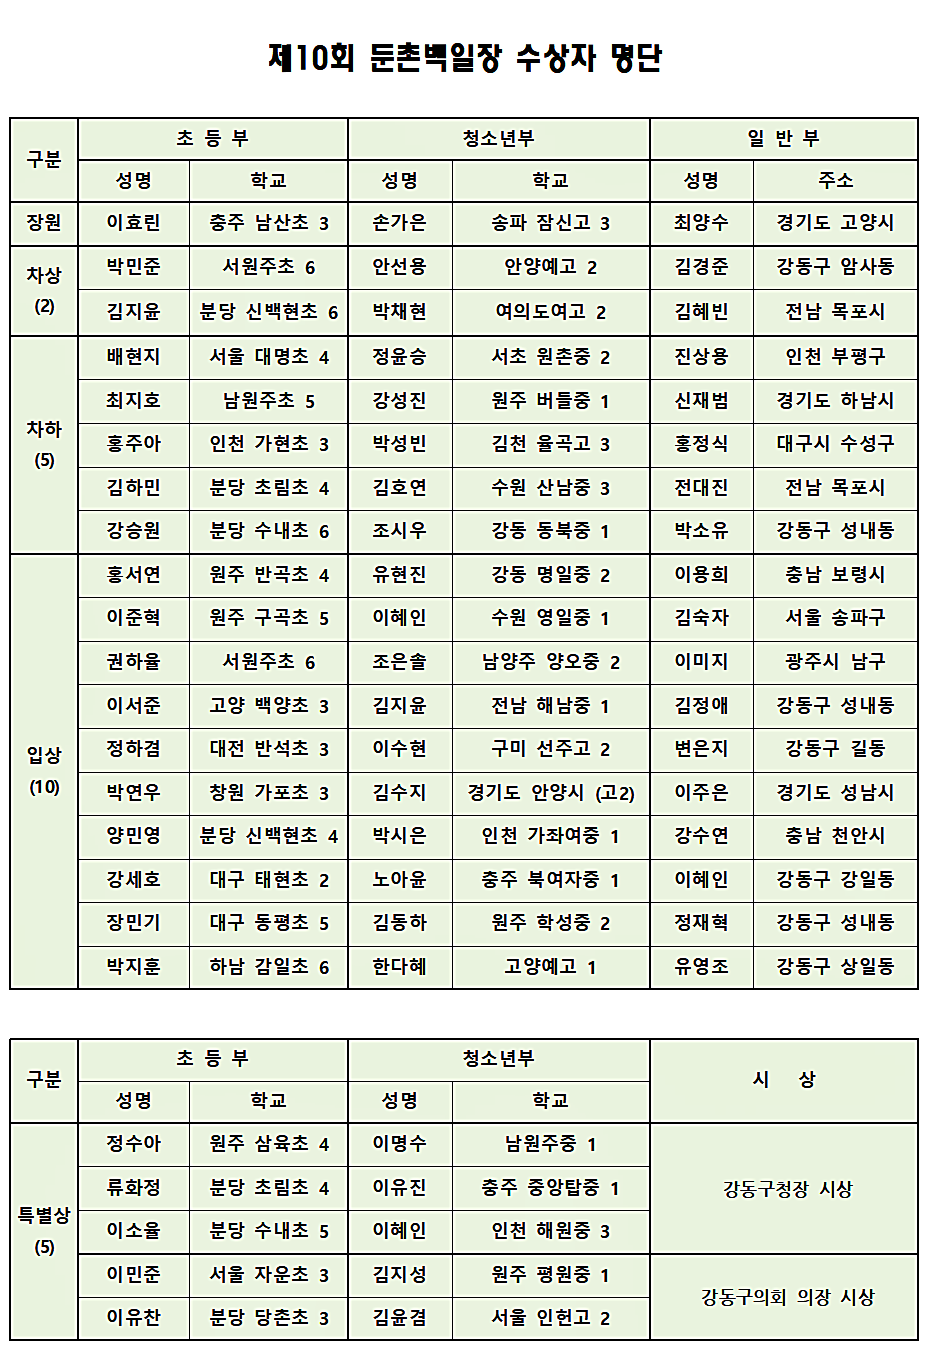 01_제10회 둔촌백일장 수상자 명단(특별상 포함)001-R01(1).png